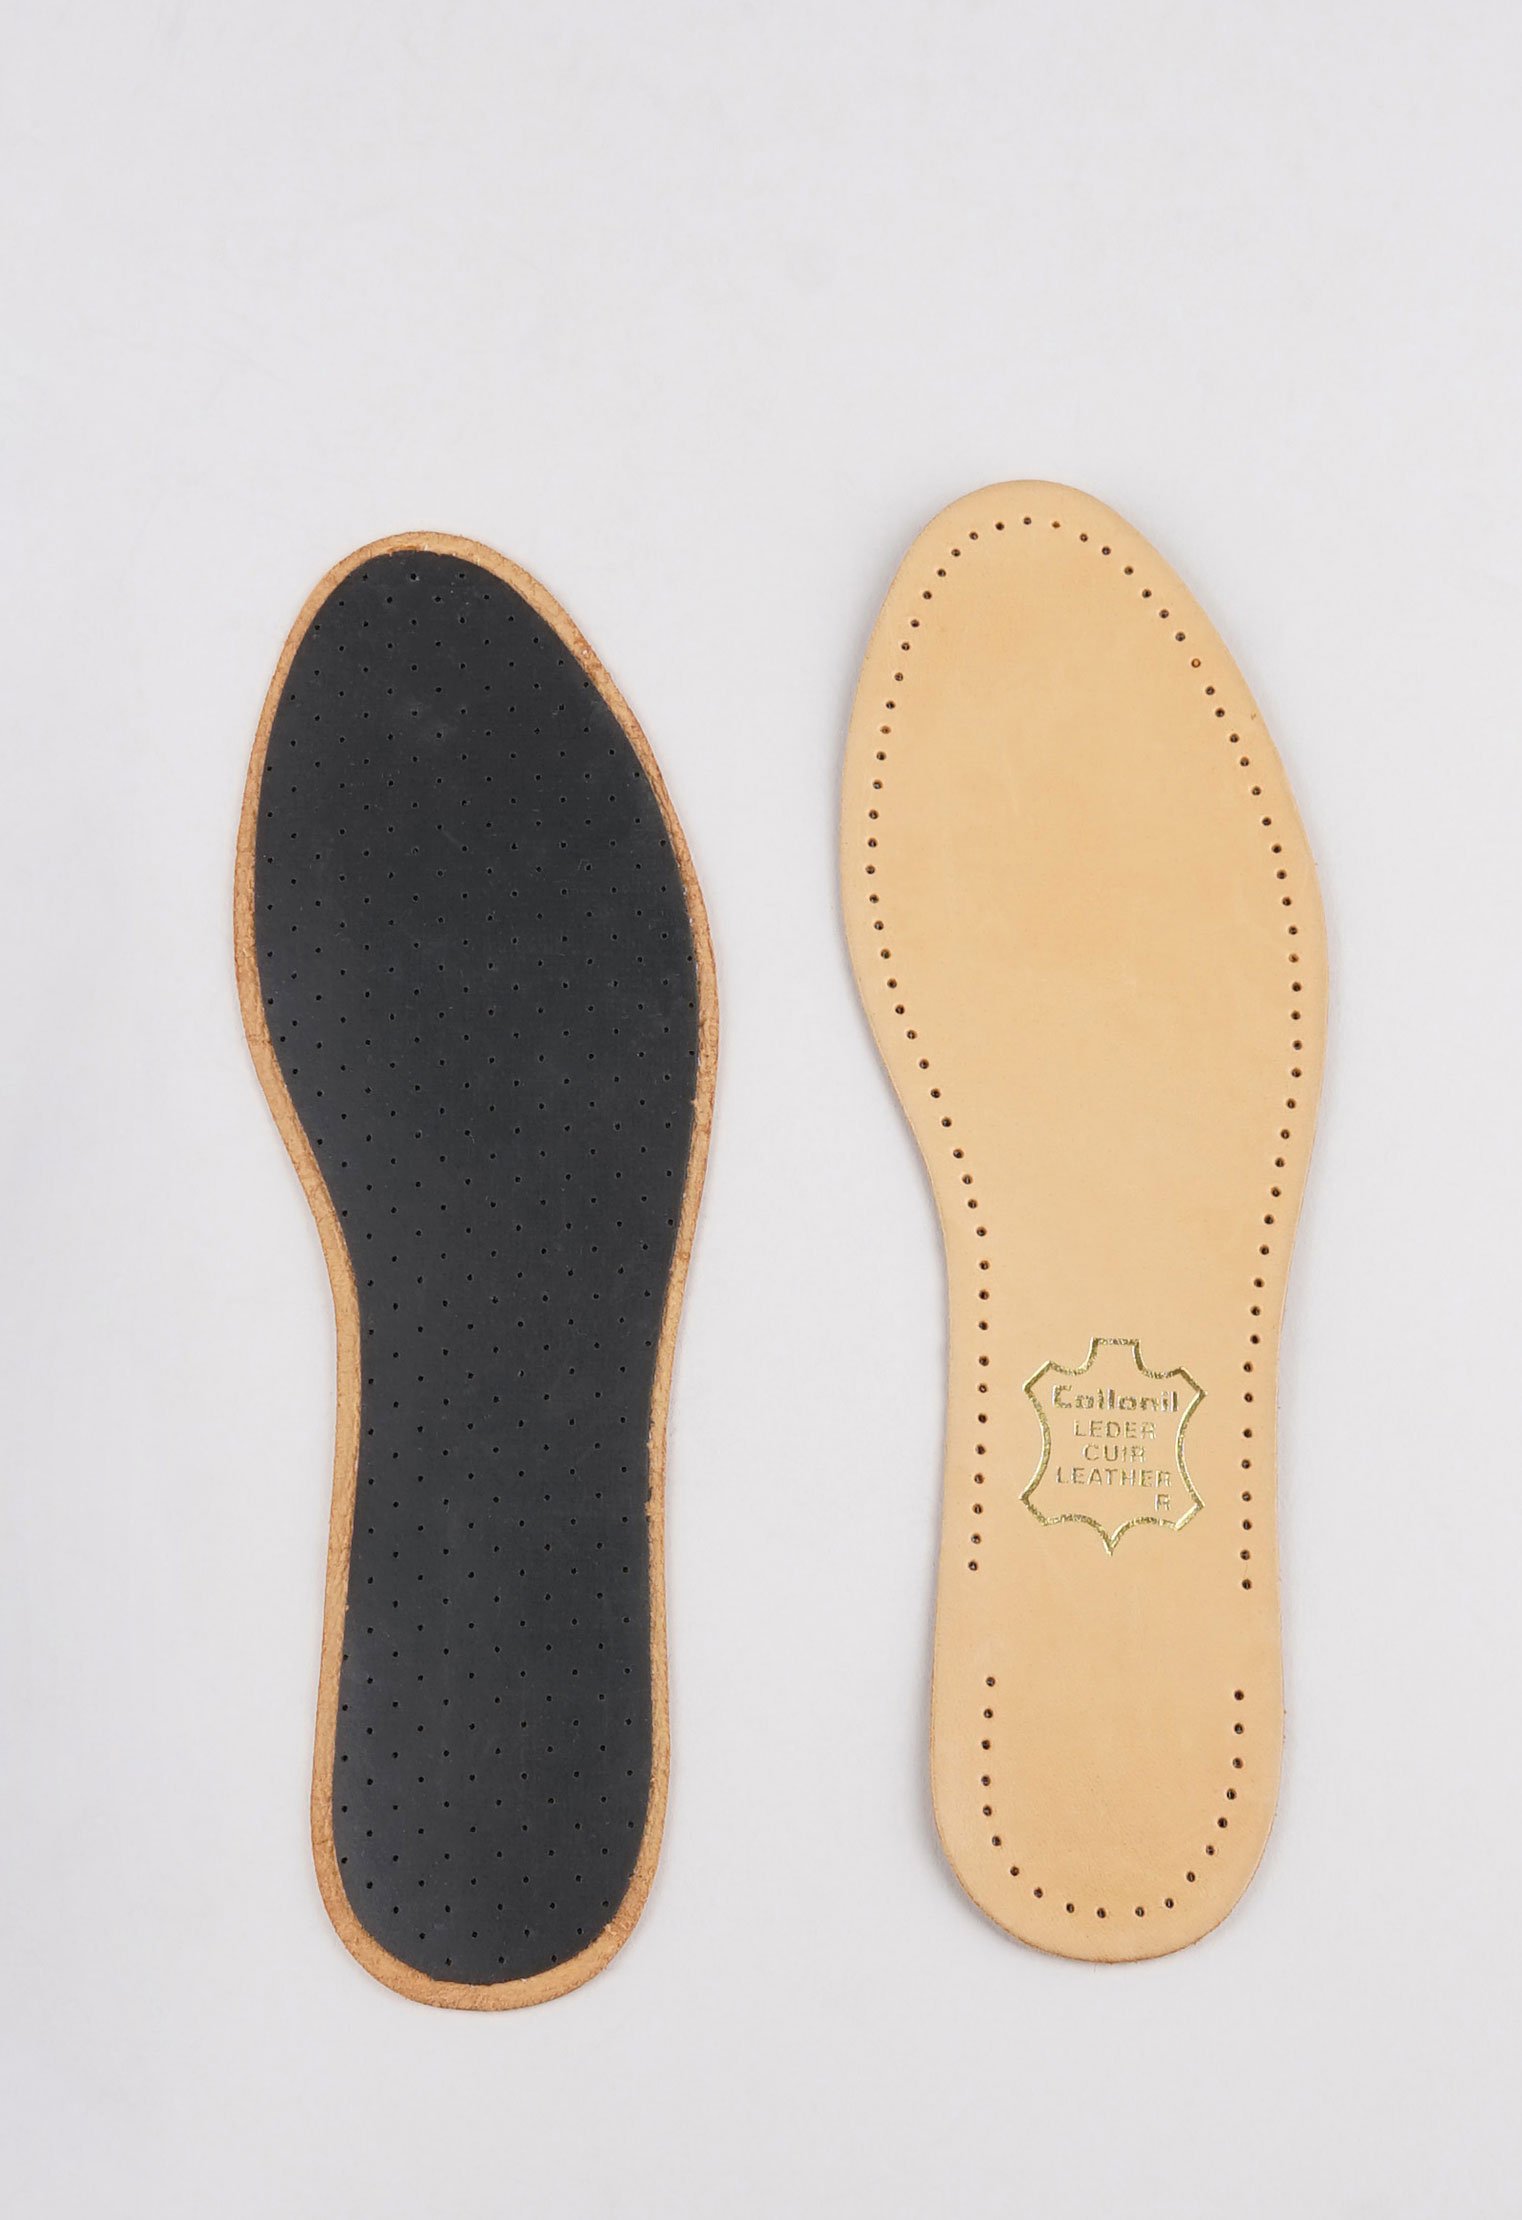 Стельки и вкладыши 20-1547 Стельки Luxor /р.39/ (Размер: 39) стельки вкладные для обуви женские lacky land серо бежевый размер 38 39